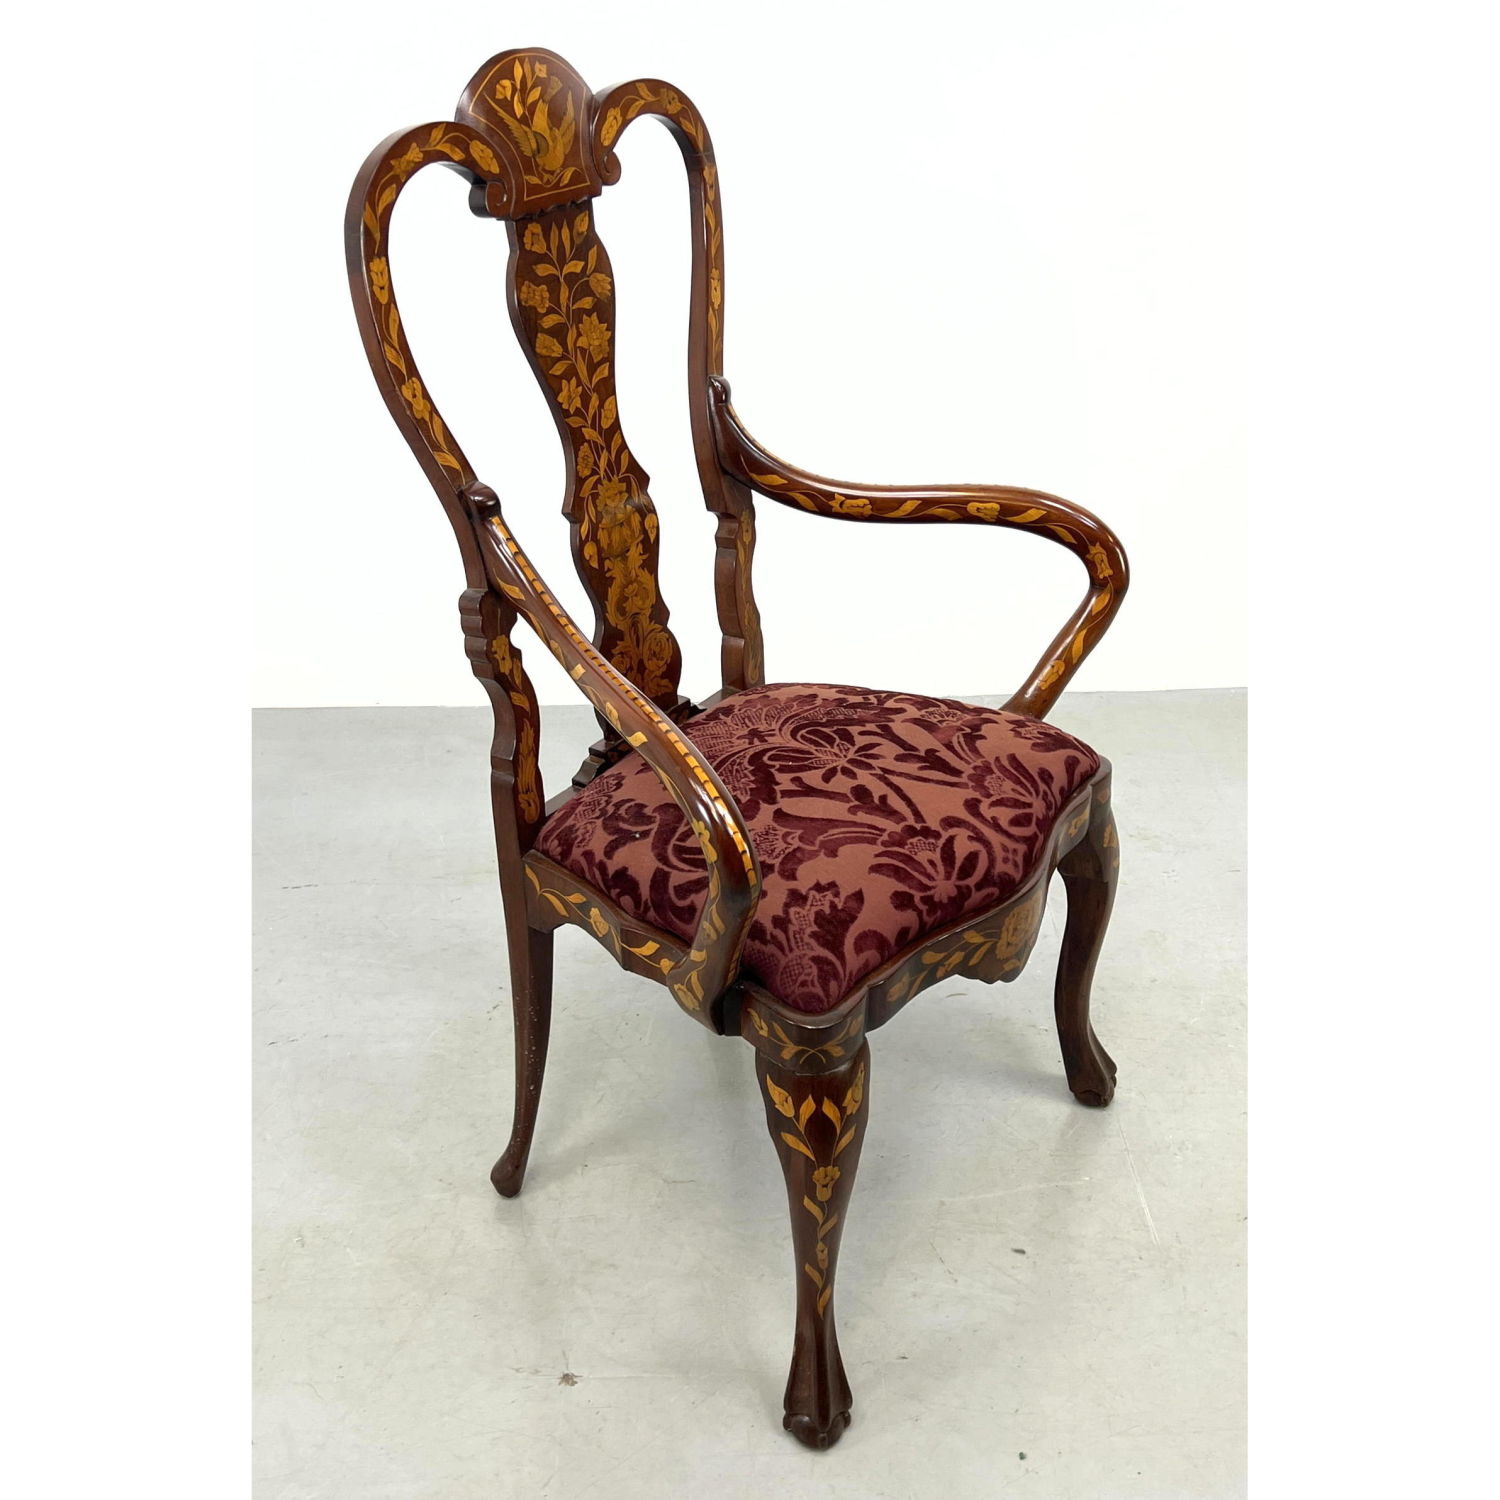 Elaborate Dutch Marquetry Arm Chair.